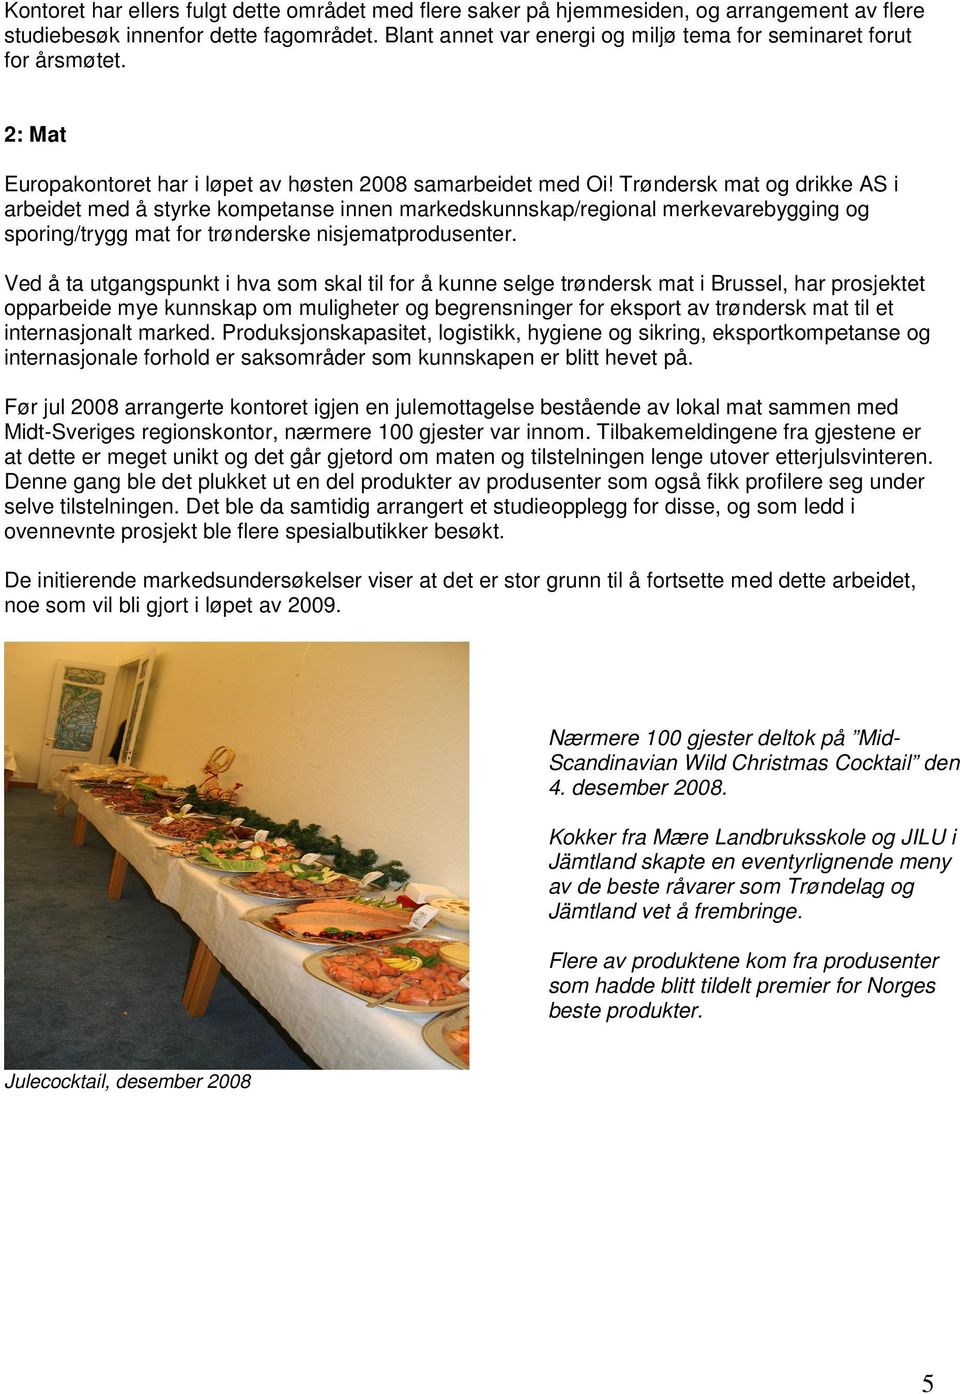 Trøndersk mat og drikke AS i arbeidet med å styrke kompetanse innen markedskunnskap/regional merkevarebygging og sporing/trygg mat for trønderske nisjematprodusenter.